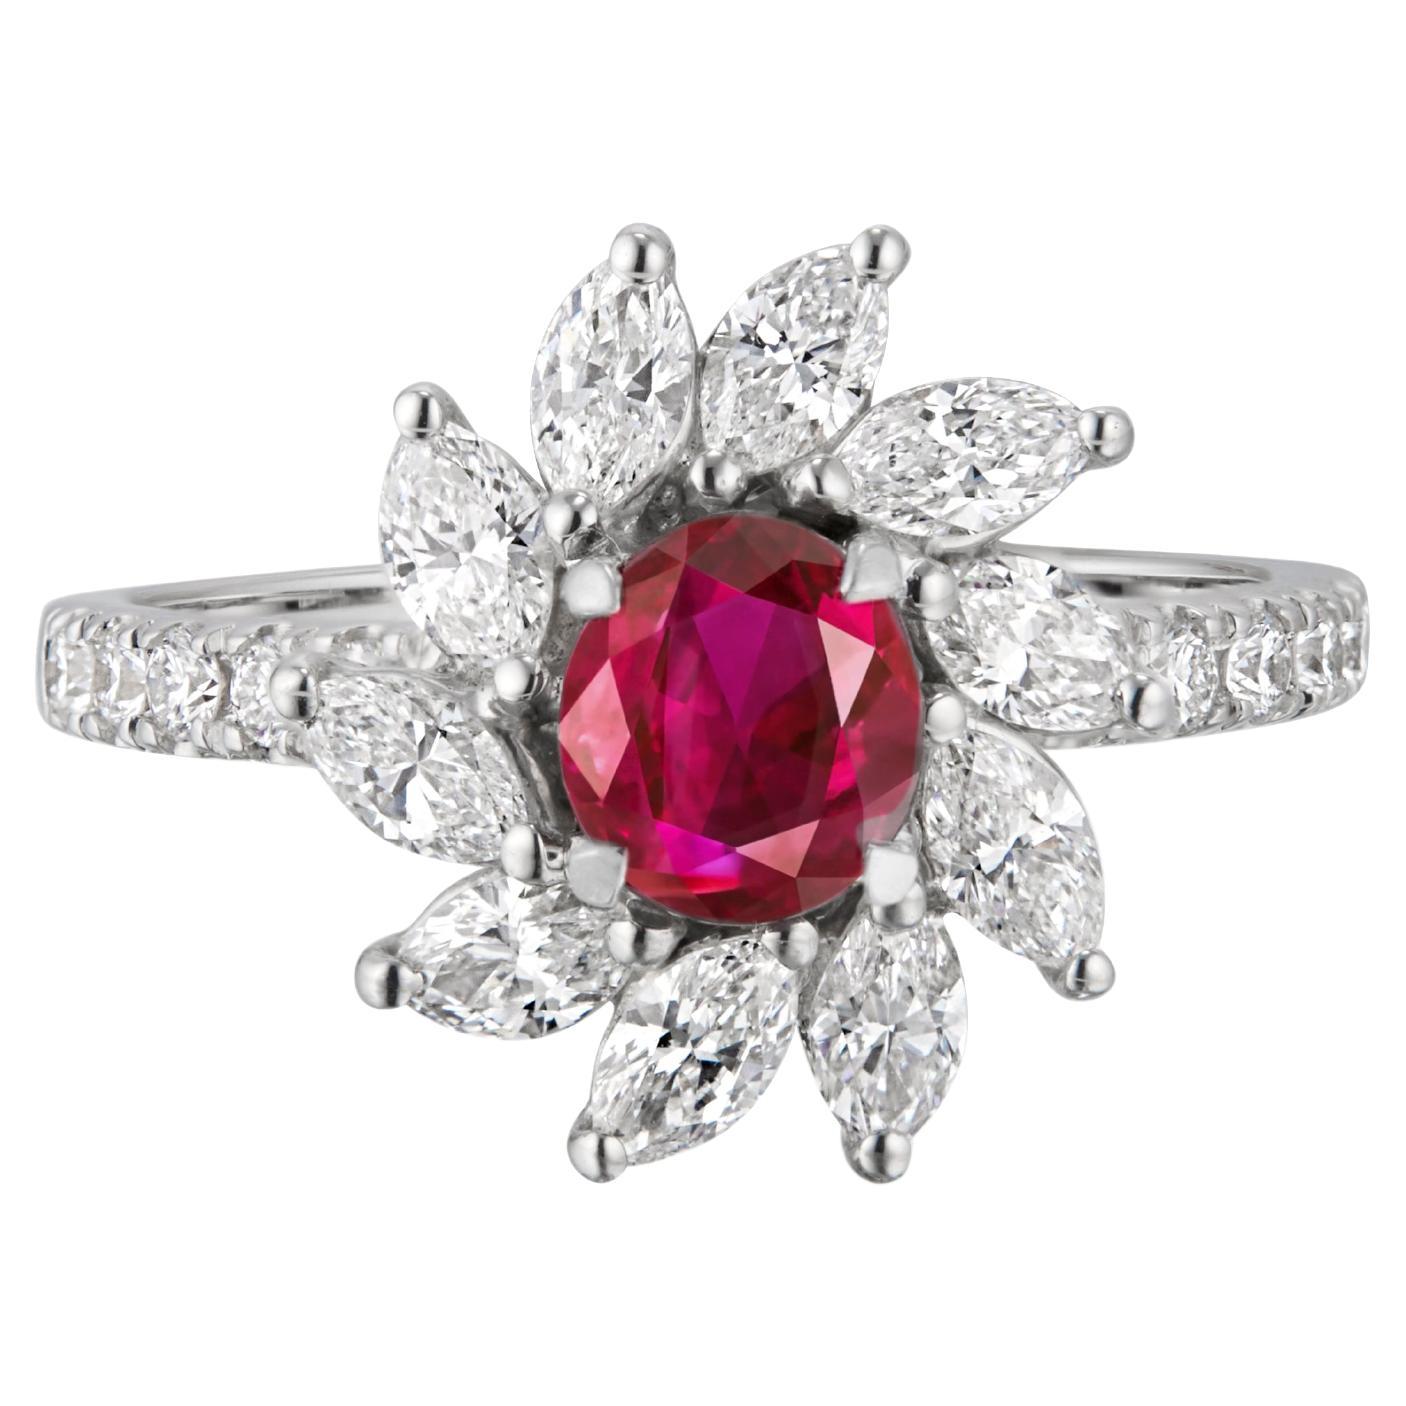 Bague en diamants et rubis de Birmanie couleur sang de pigeon de 0,77 carat, certifié SSEF, sans chaleur